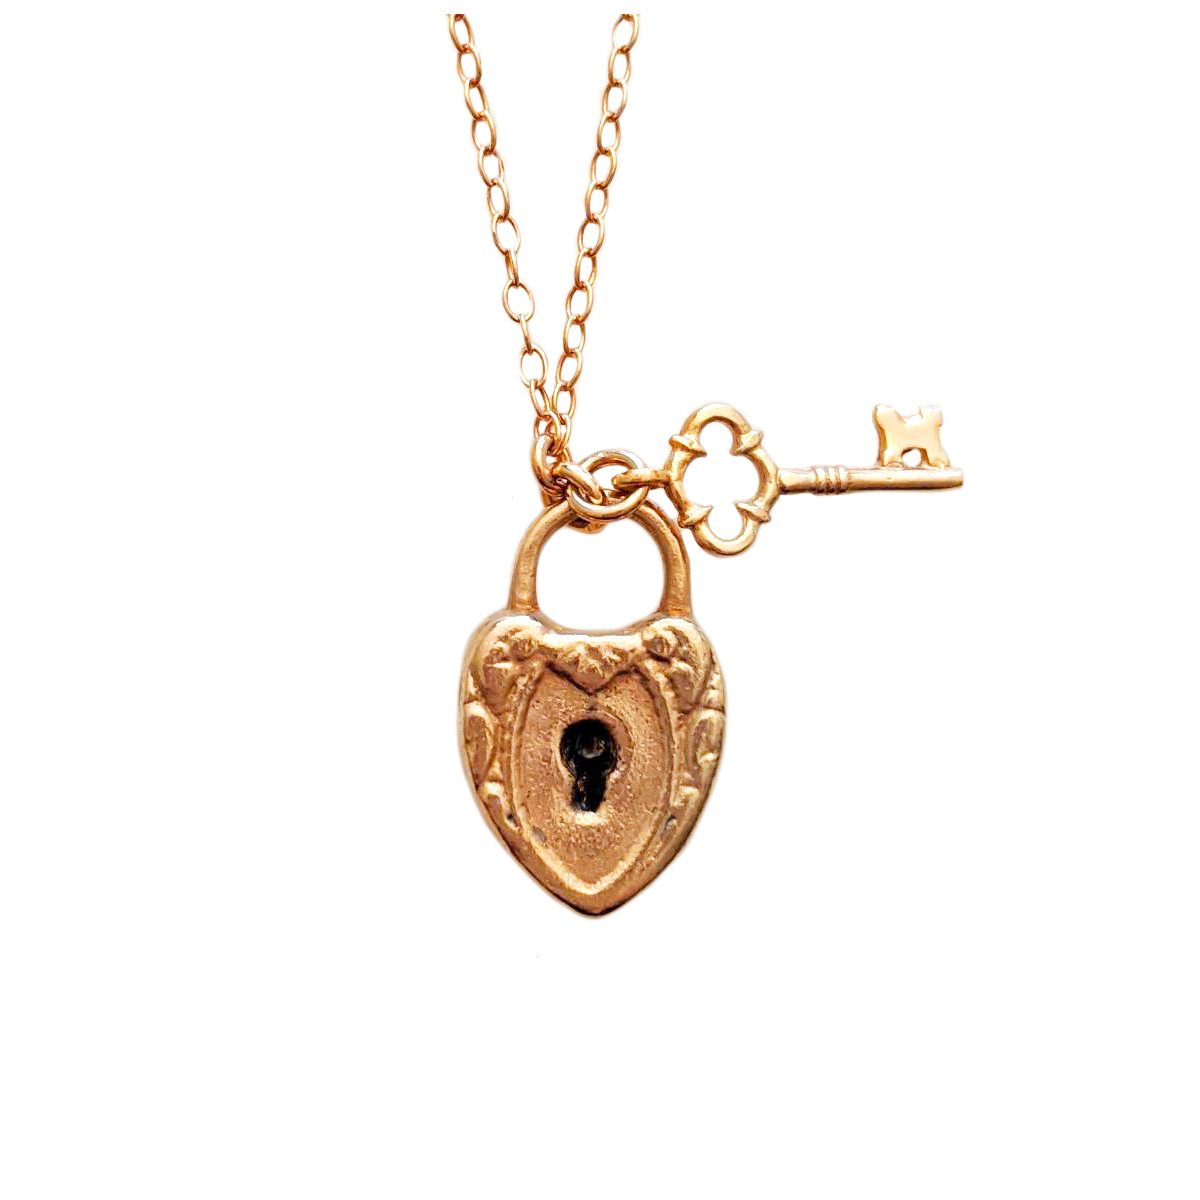 40% Off! Lock & Key Necklace – Rebekah Brooks Jewelry